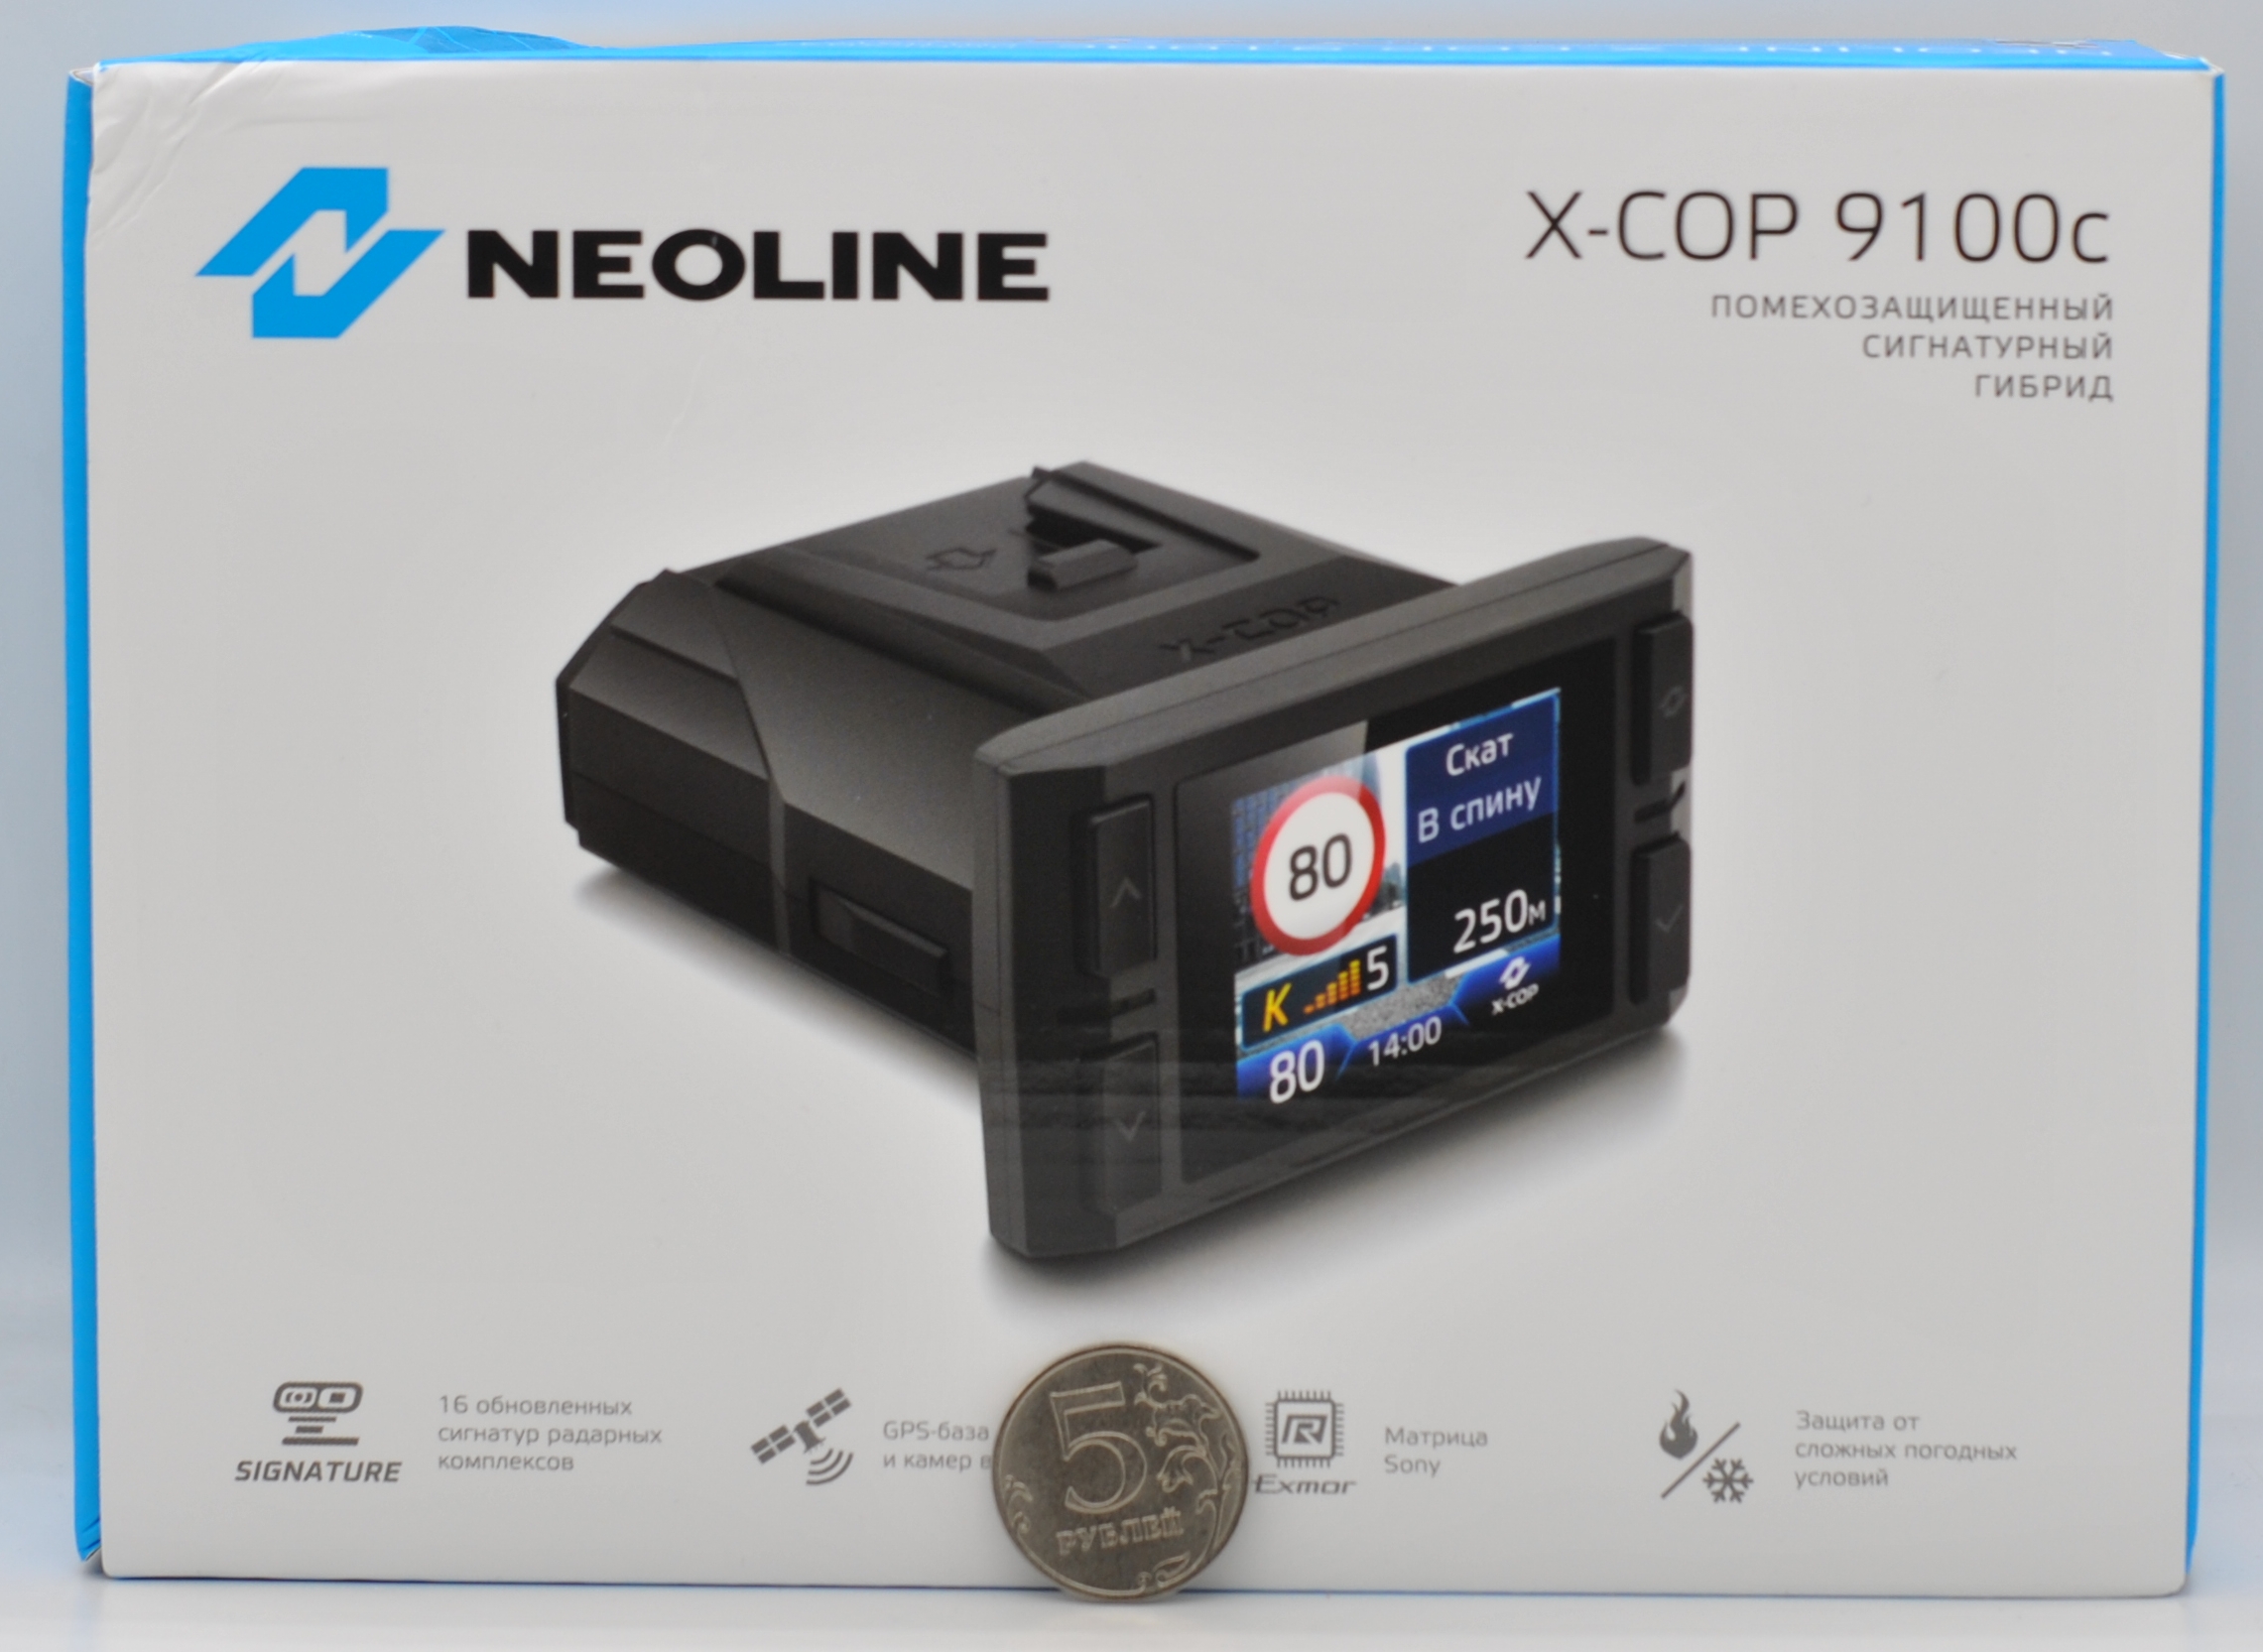 Neoline x cop 9100z. Neoline x-cop 9100x. X-cop 6000c. Где на коробке находится серийный номер устройства гибрила Neoline xcop 9100z.